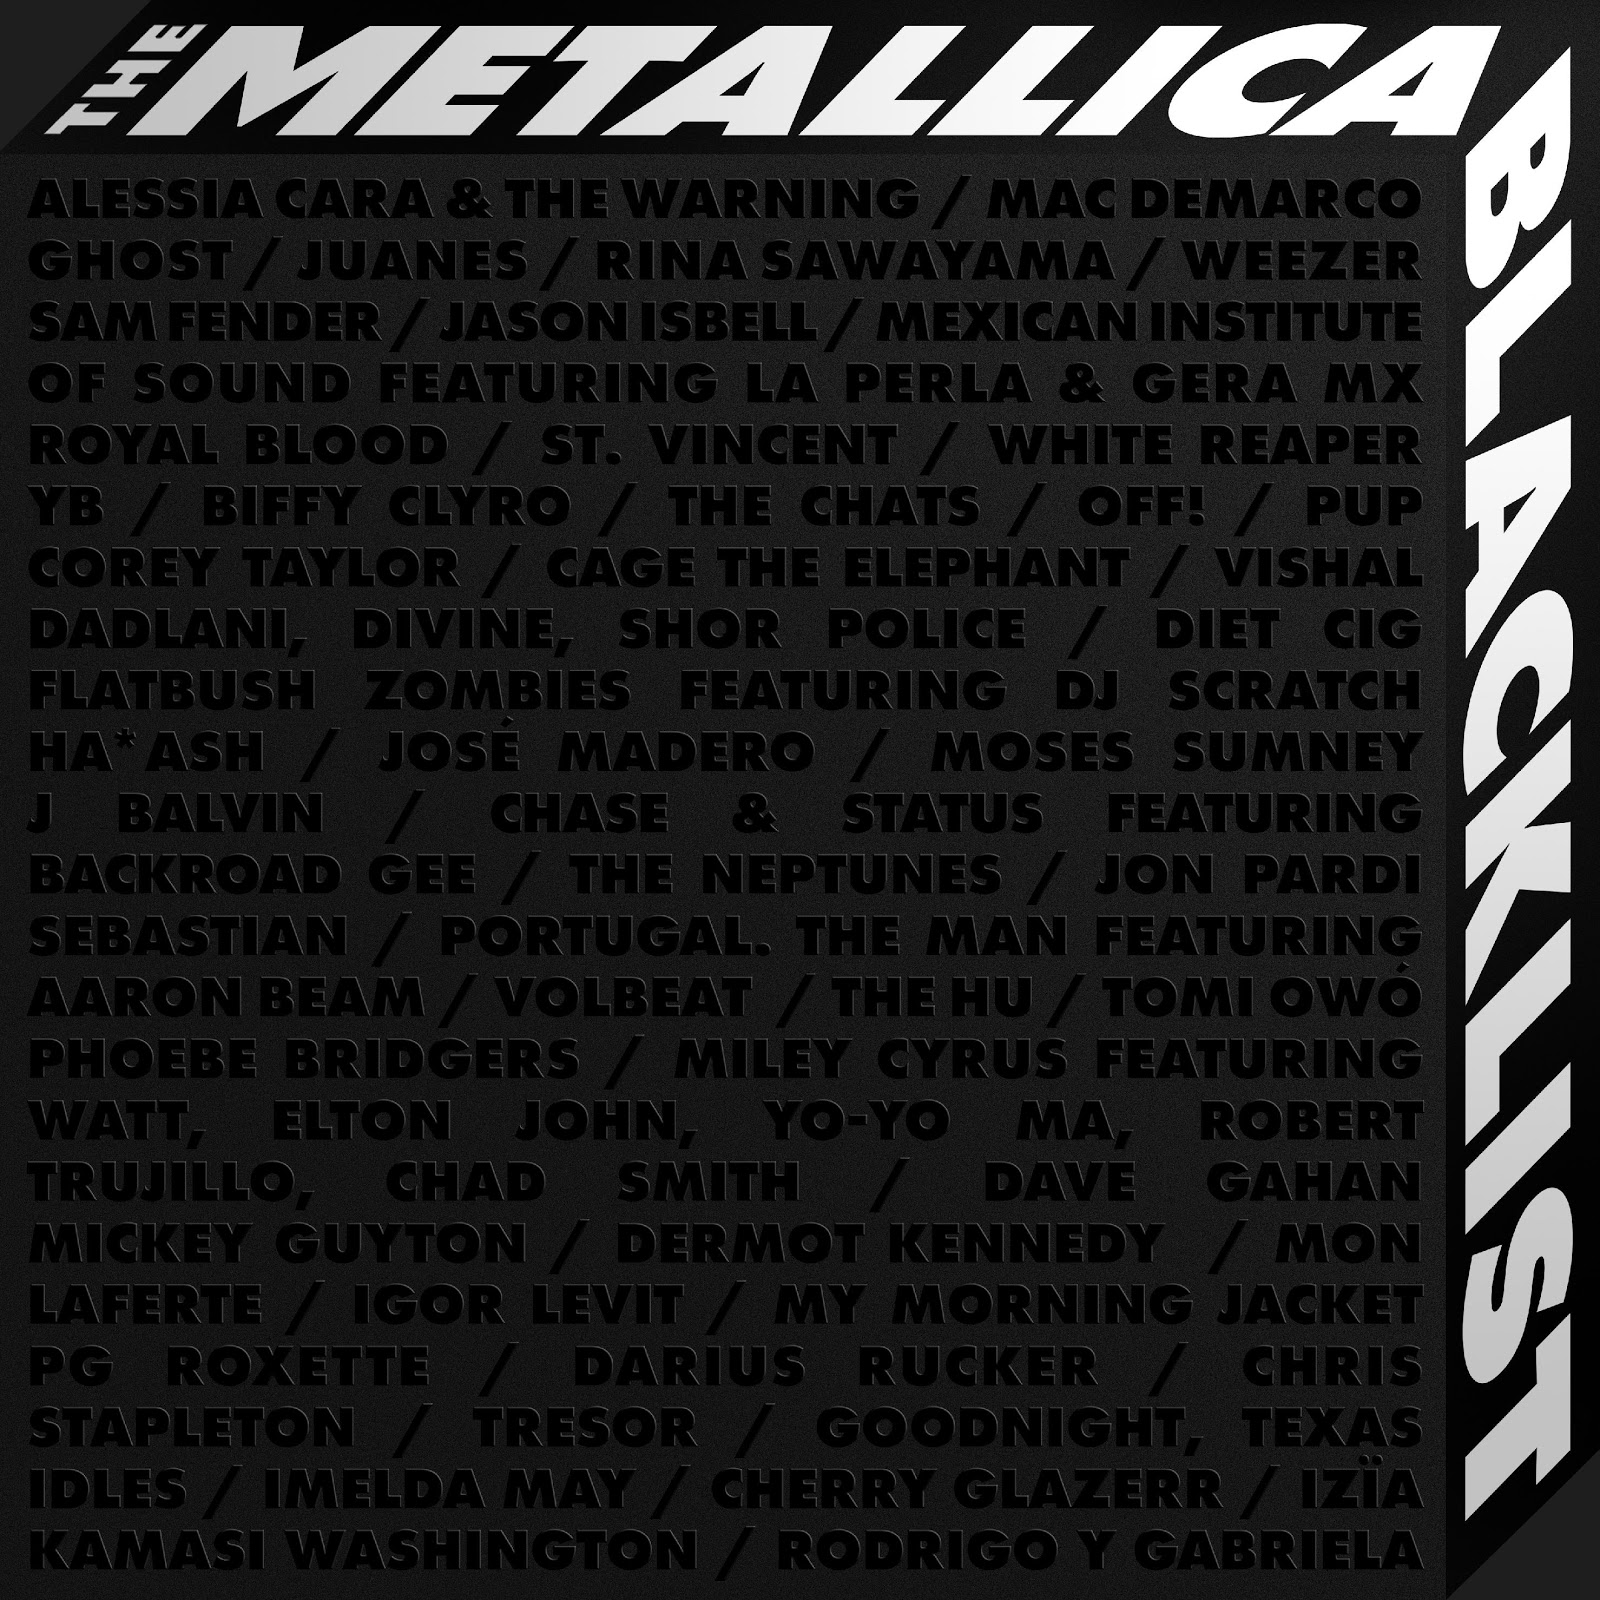 METALLICA: THE BLACK ALBUM REMASTERED, THE METALLICA BLACKLIST ALBUM FEATURING 53 ARTISTS